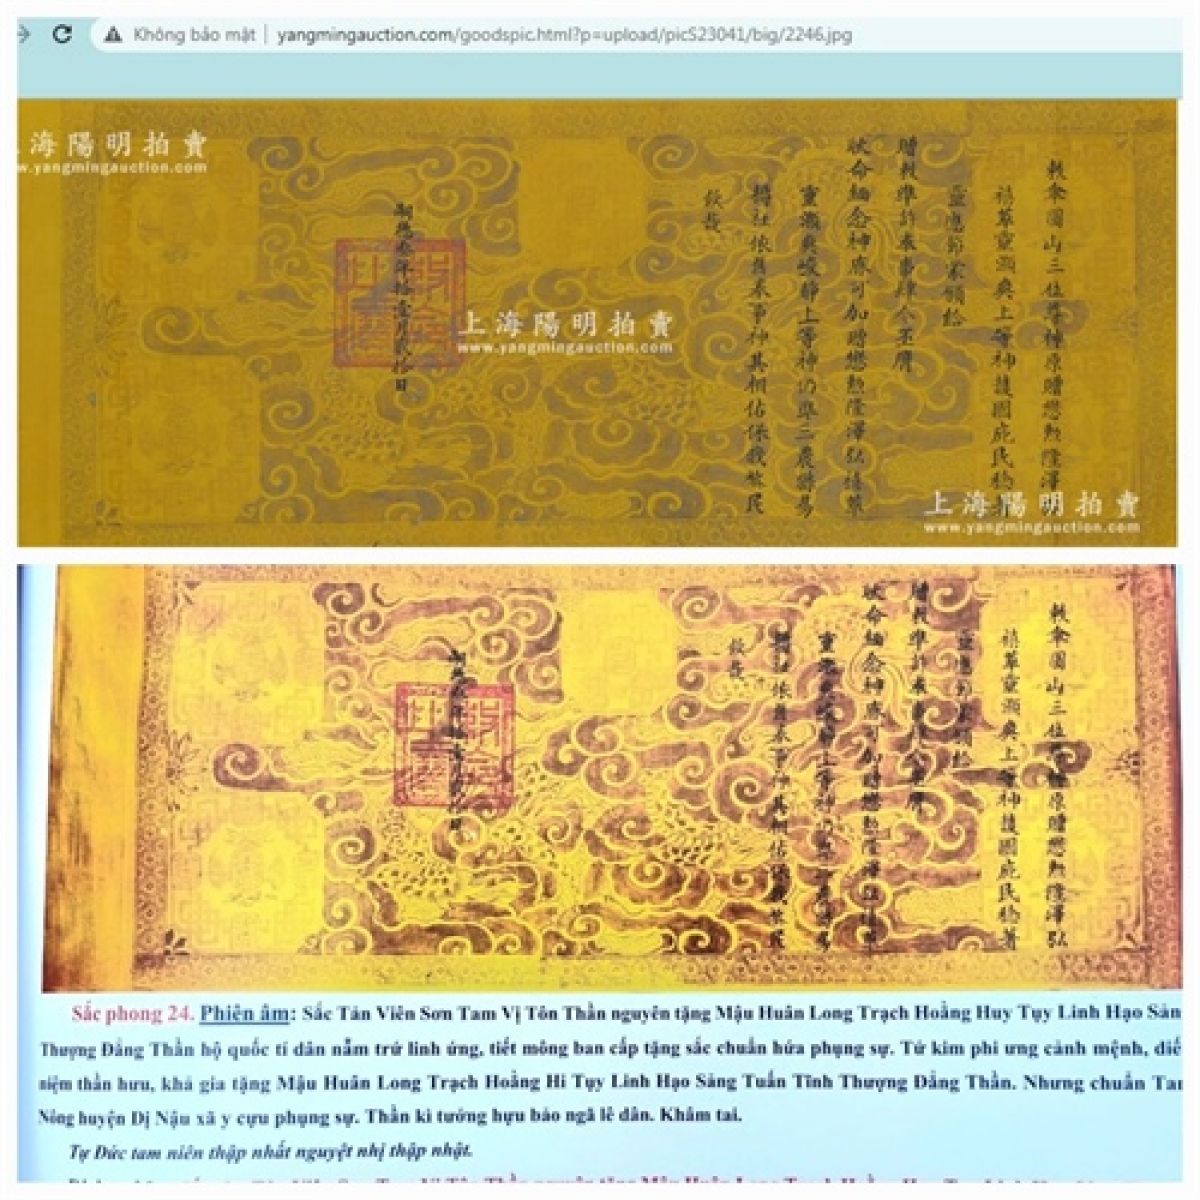 Sắc phong của Việt Nam từng bị rao bán đấu giá trên trang mạng của Trung Quốc